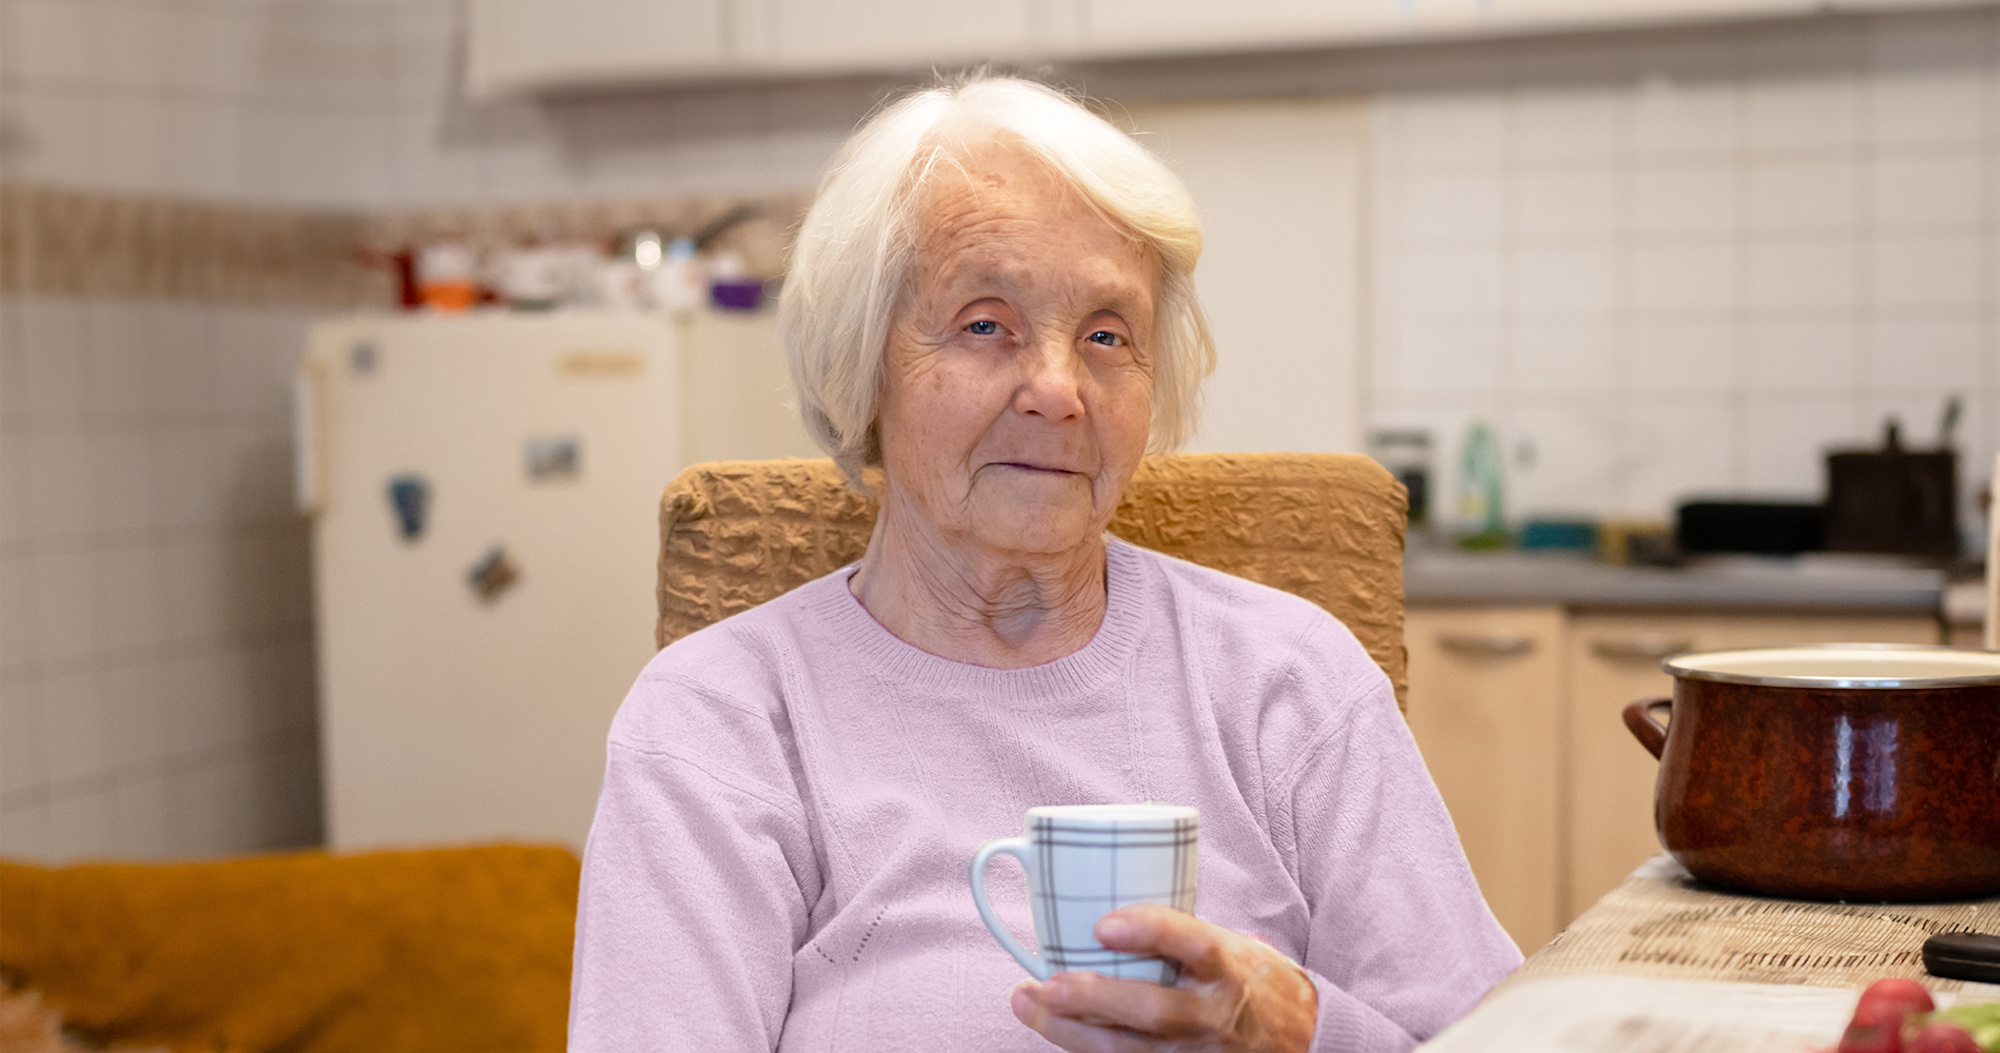 Elderly woman in pink shirt holding mug.